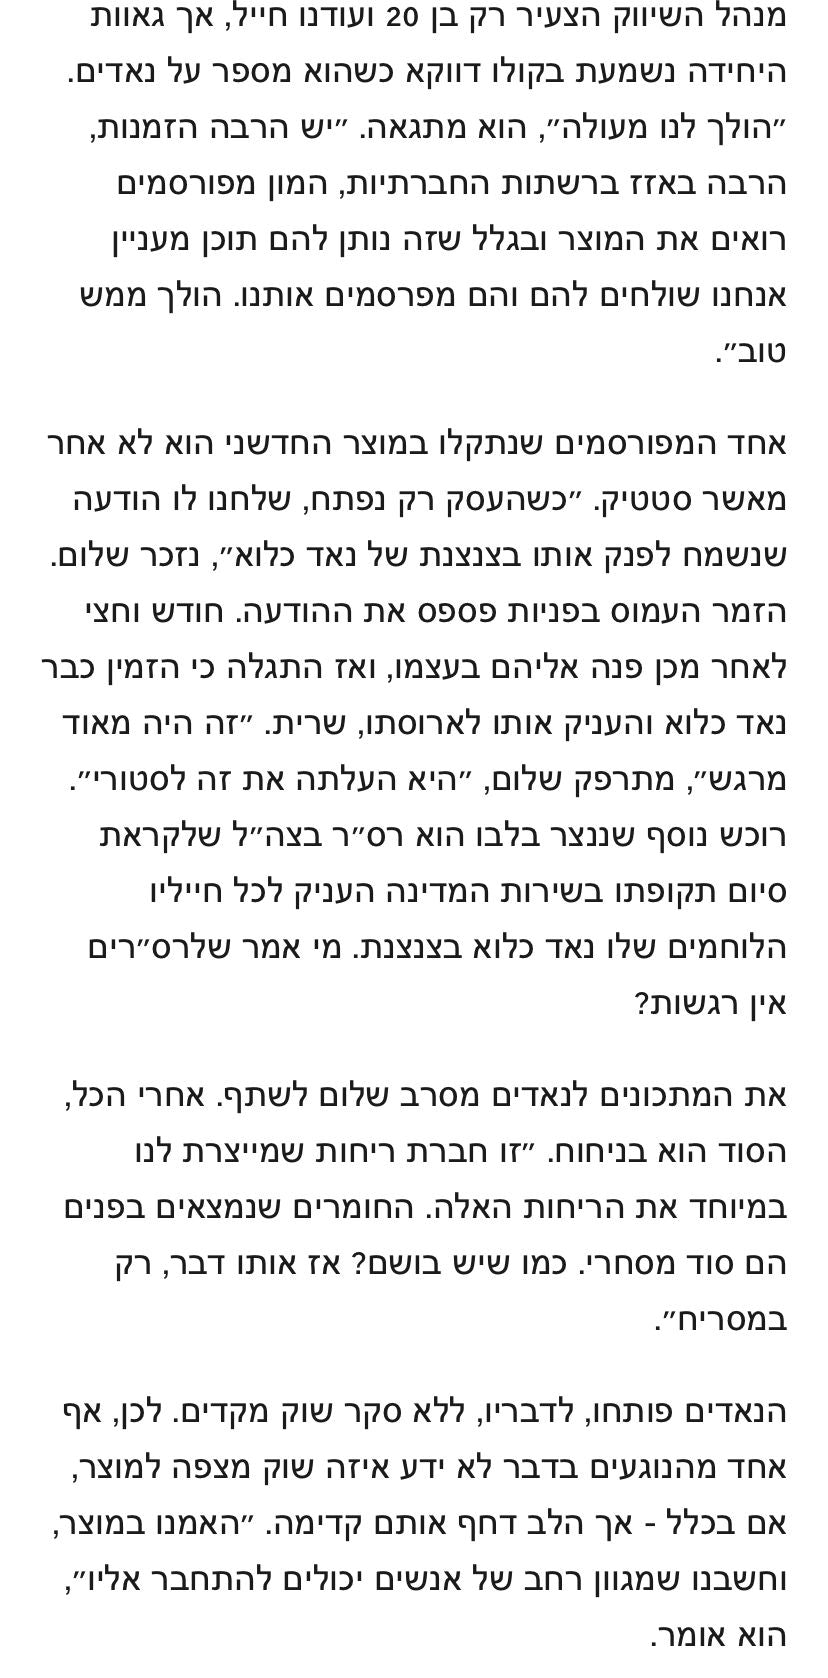 Nod Callu Ynet Image 4